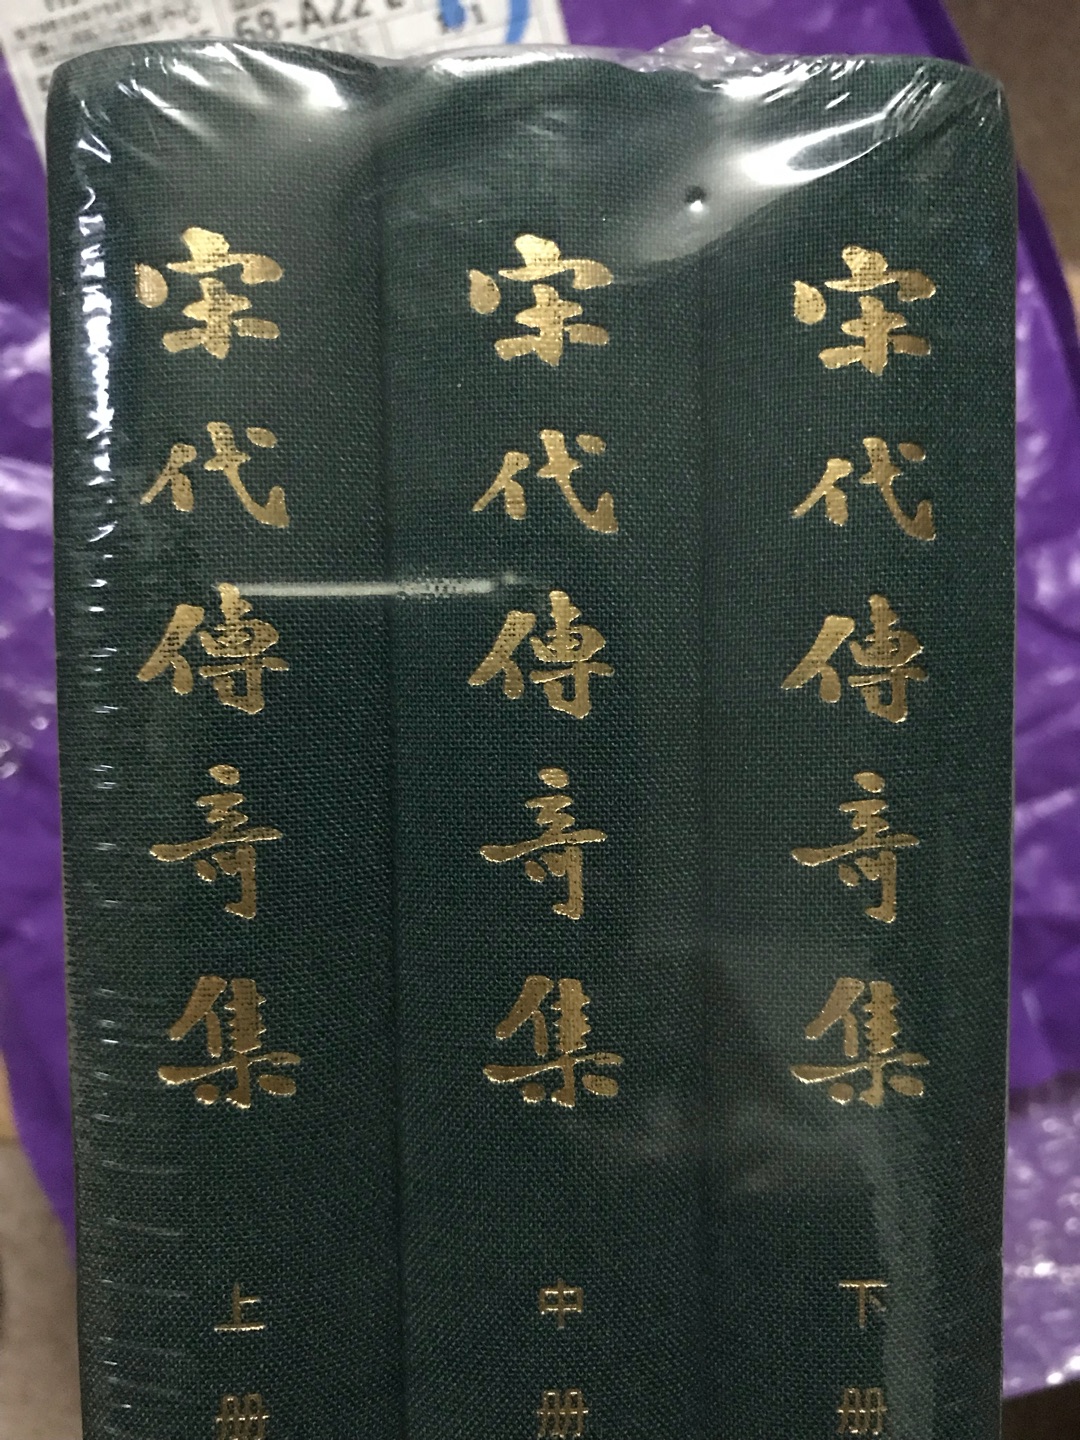 中华书局出版的这套书不错，多买了一套送朋友……缺点就是不是全部布面精装……